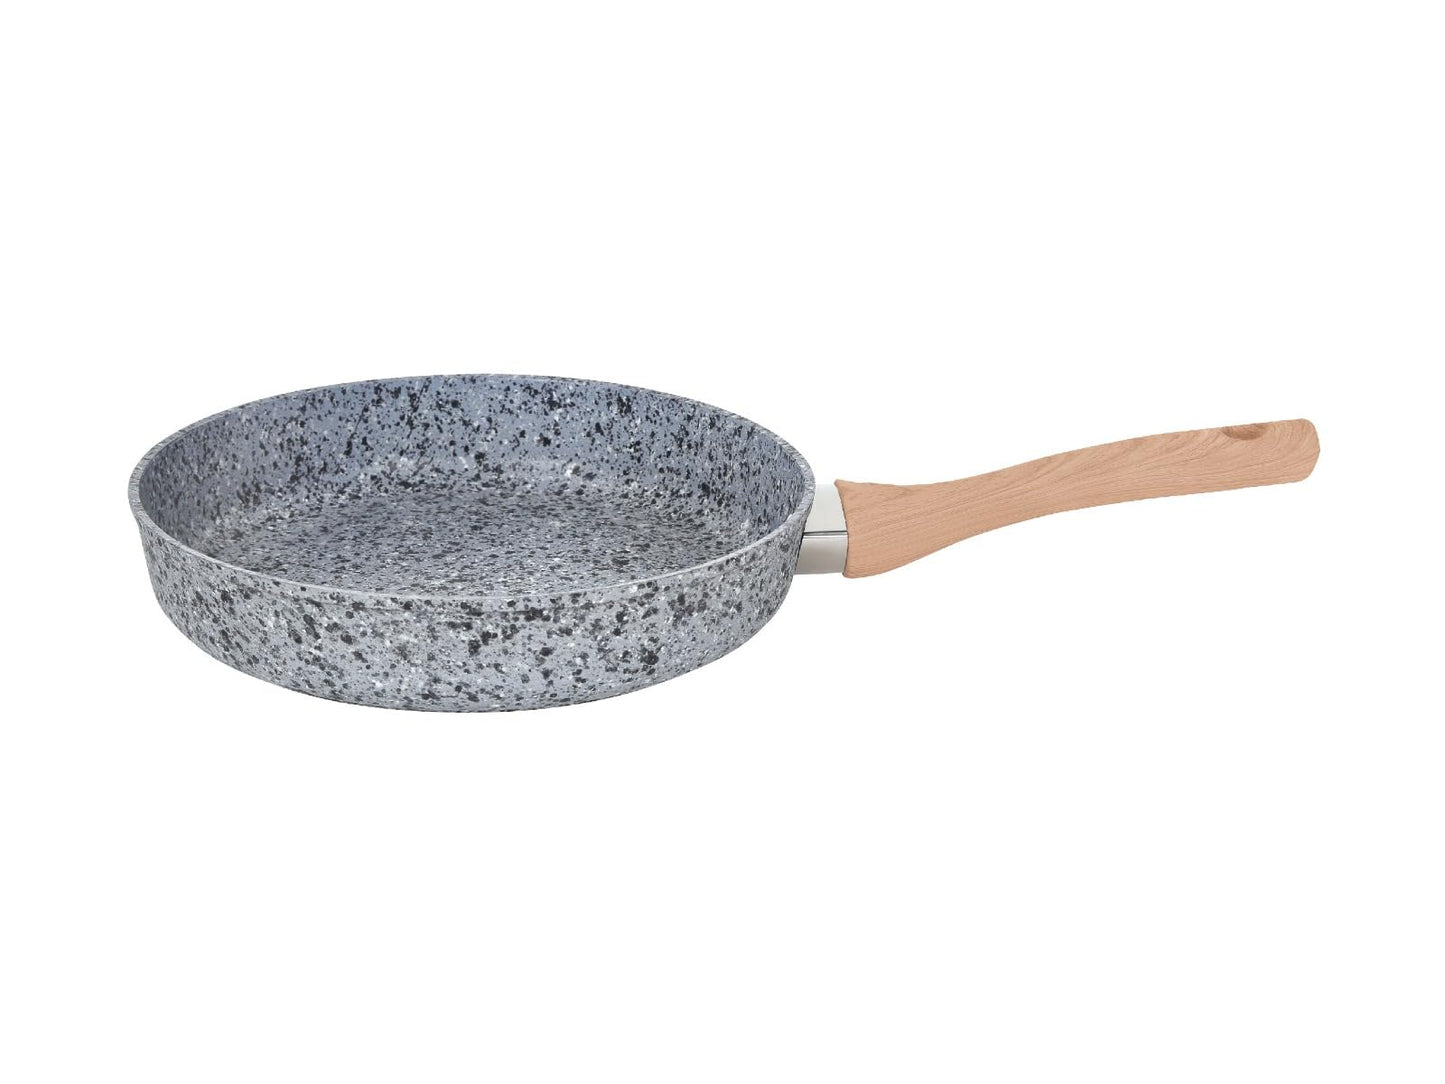 Stone frying Pan